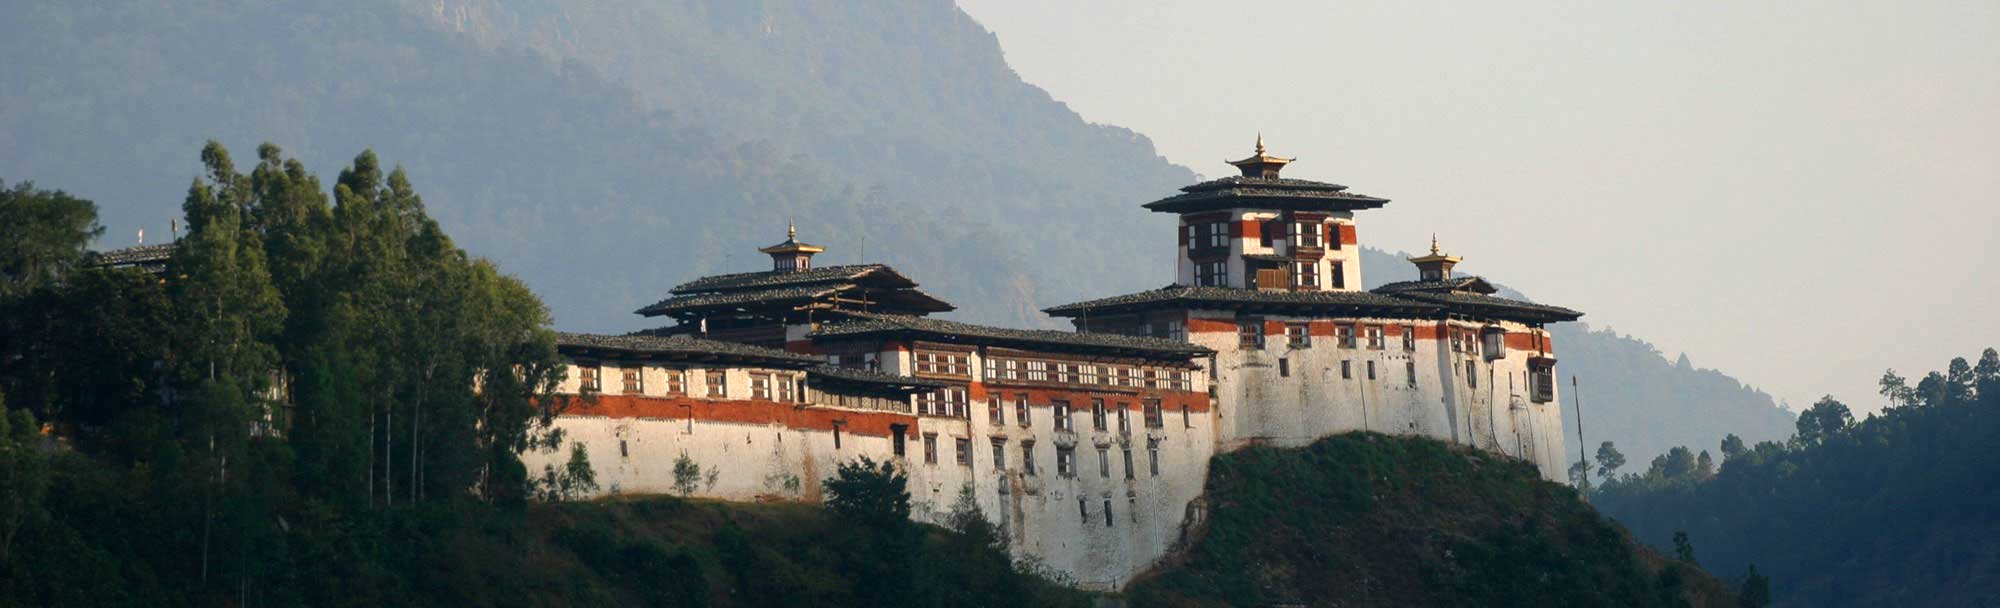 Wangdue Phodrang Dzong. Bhutan